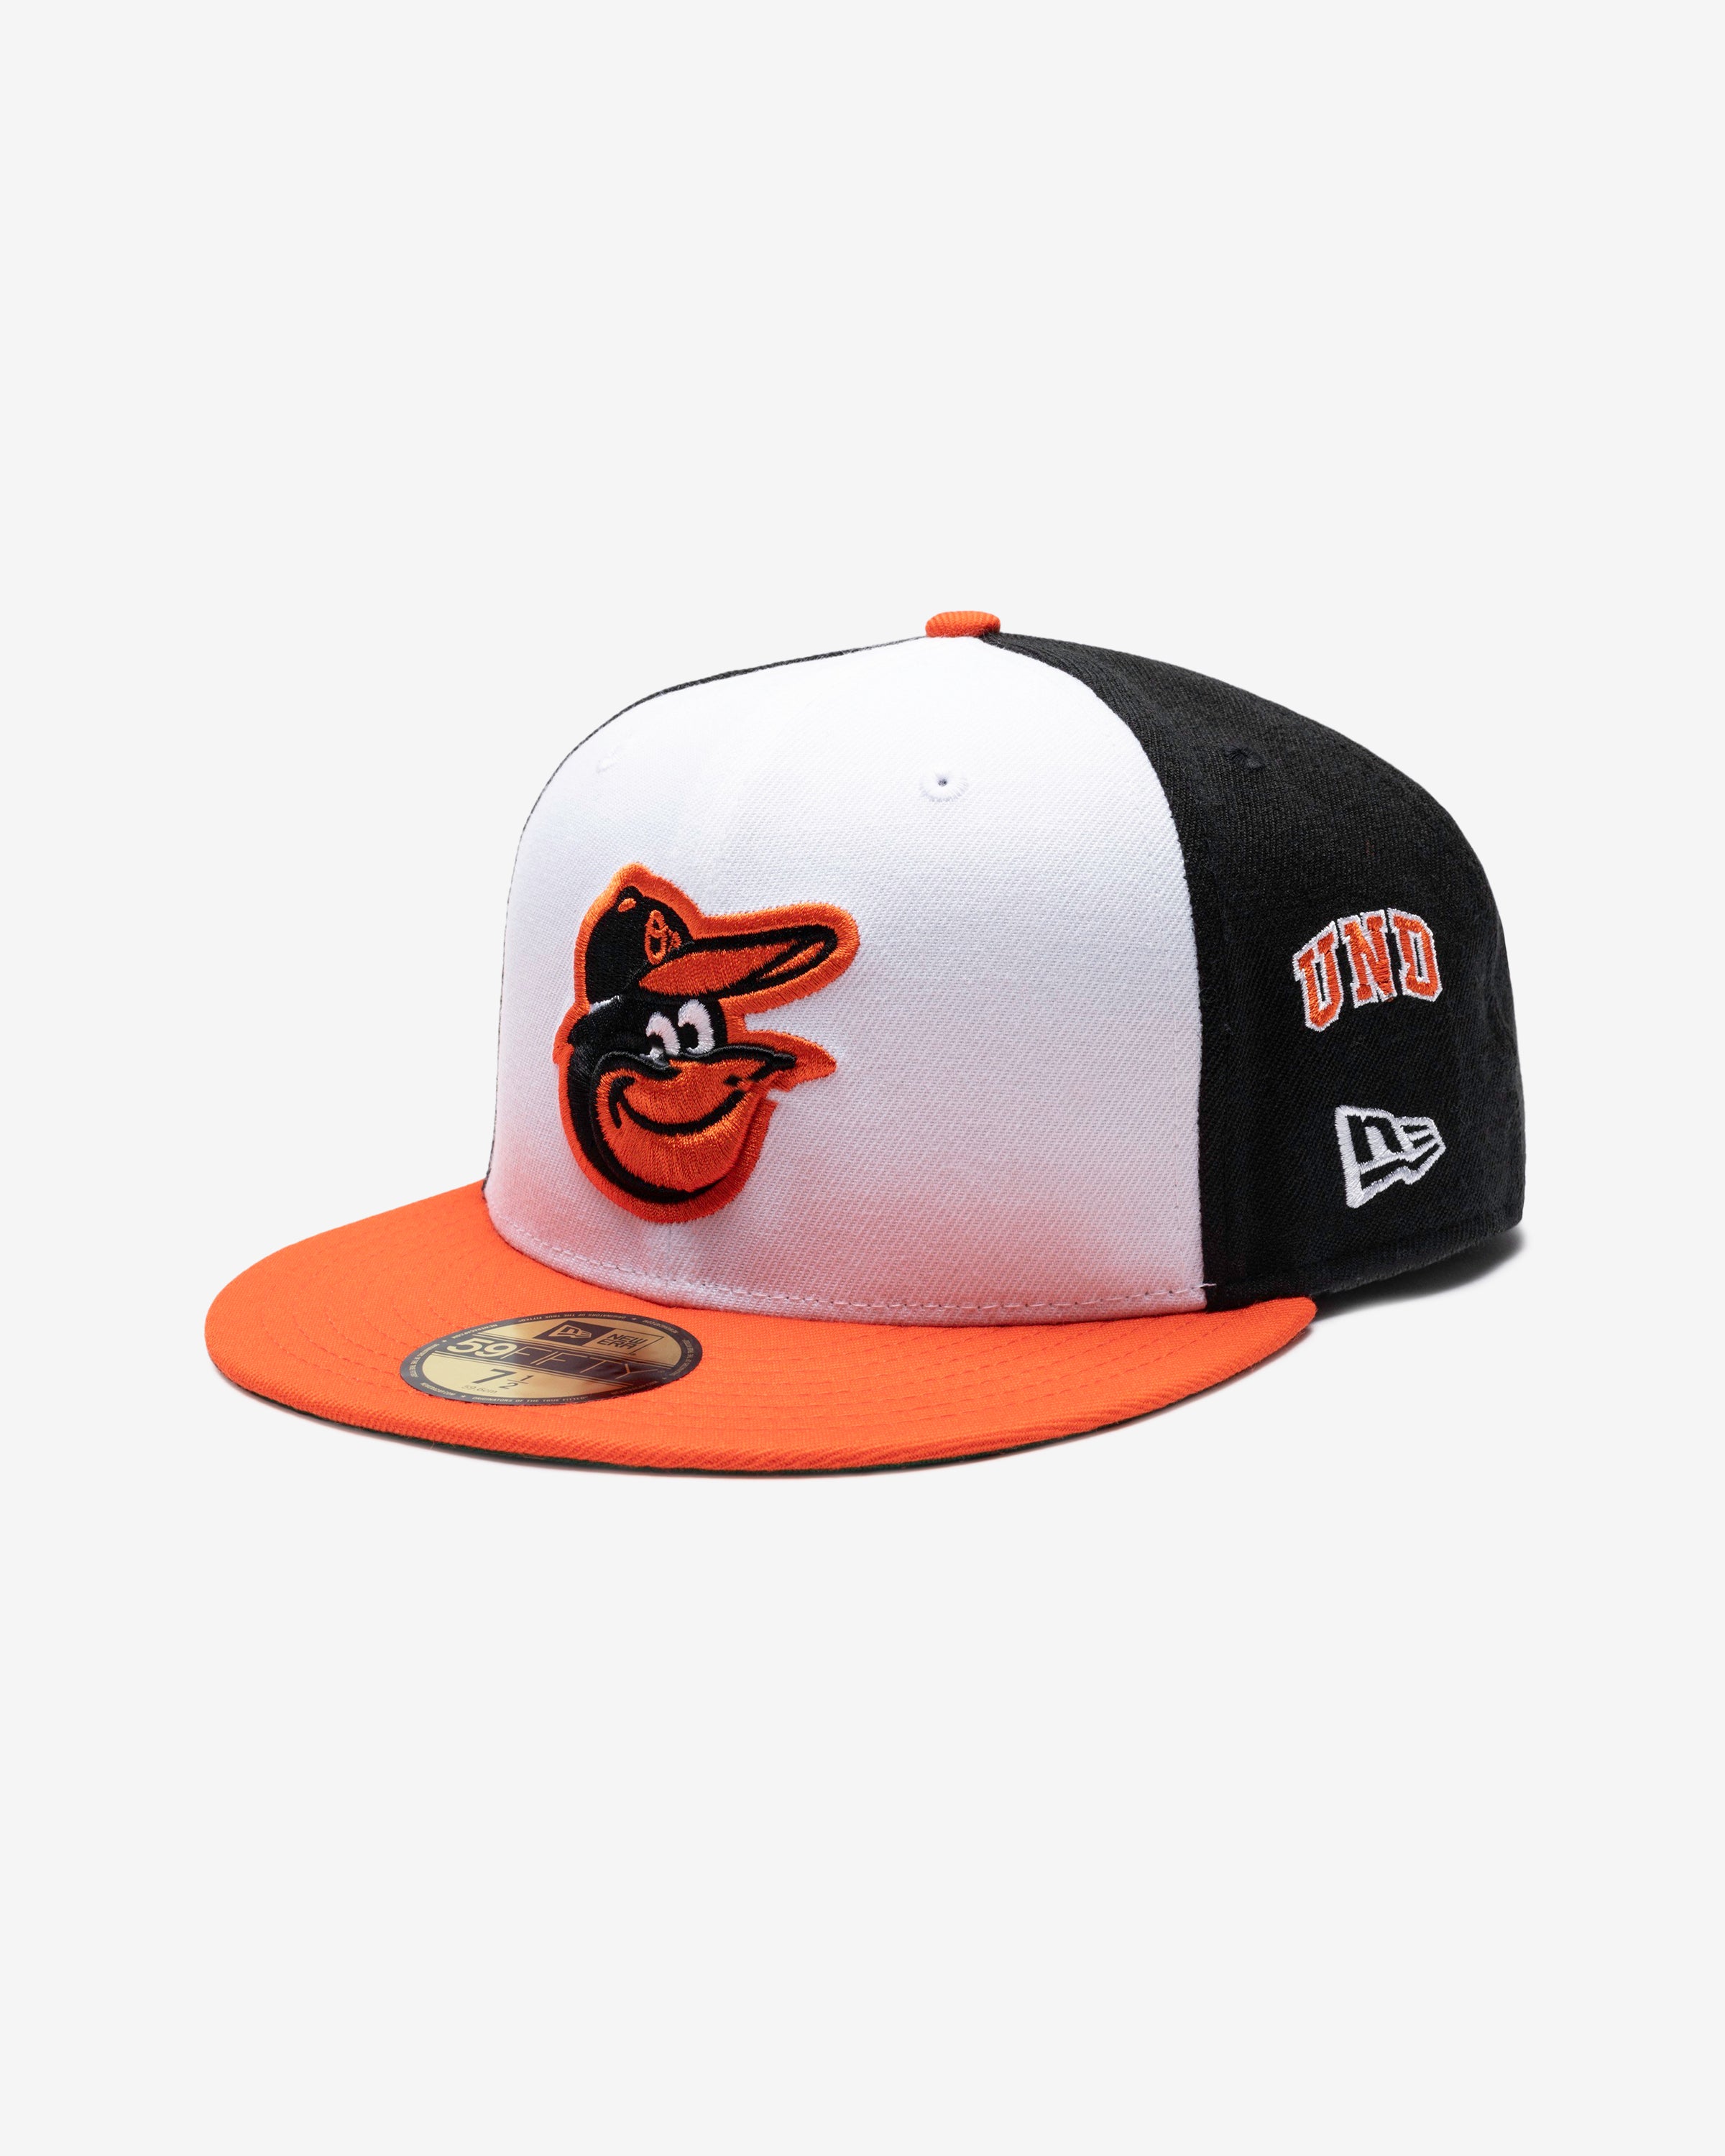 Baltimore Orioles (@Orioles) / X